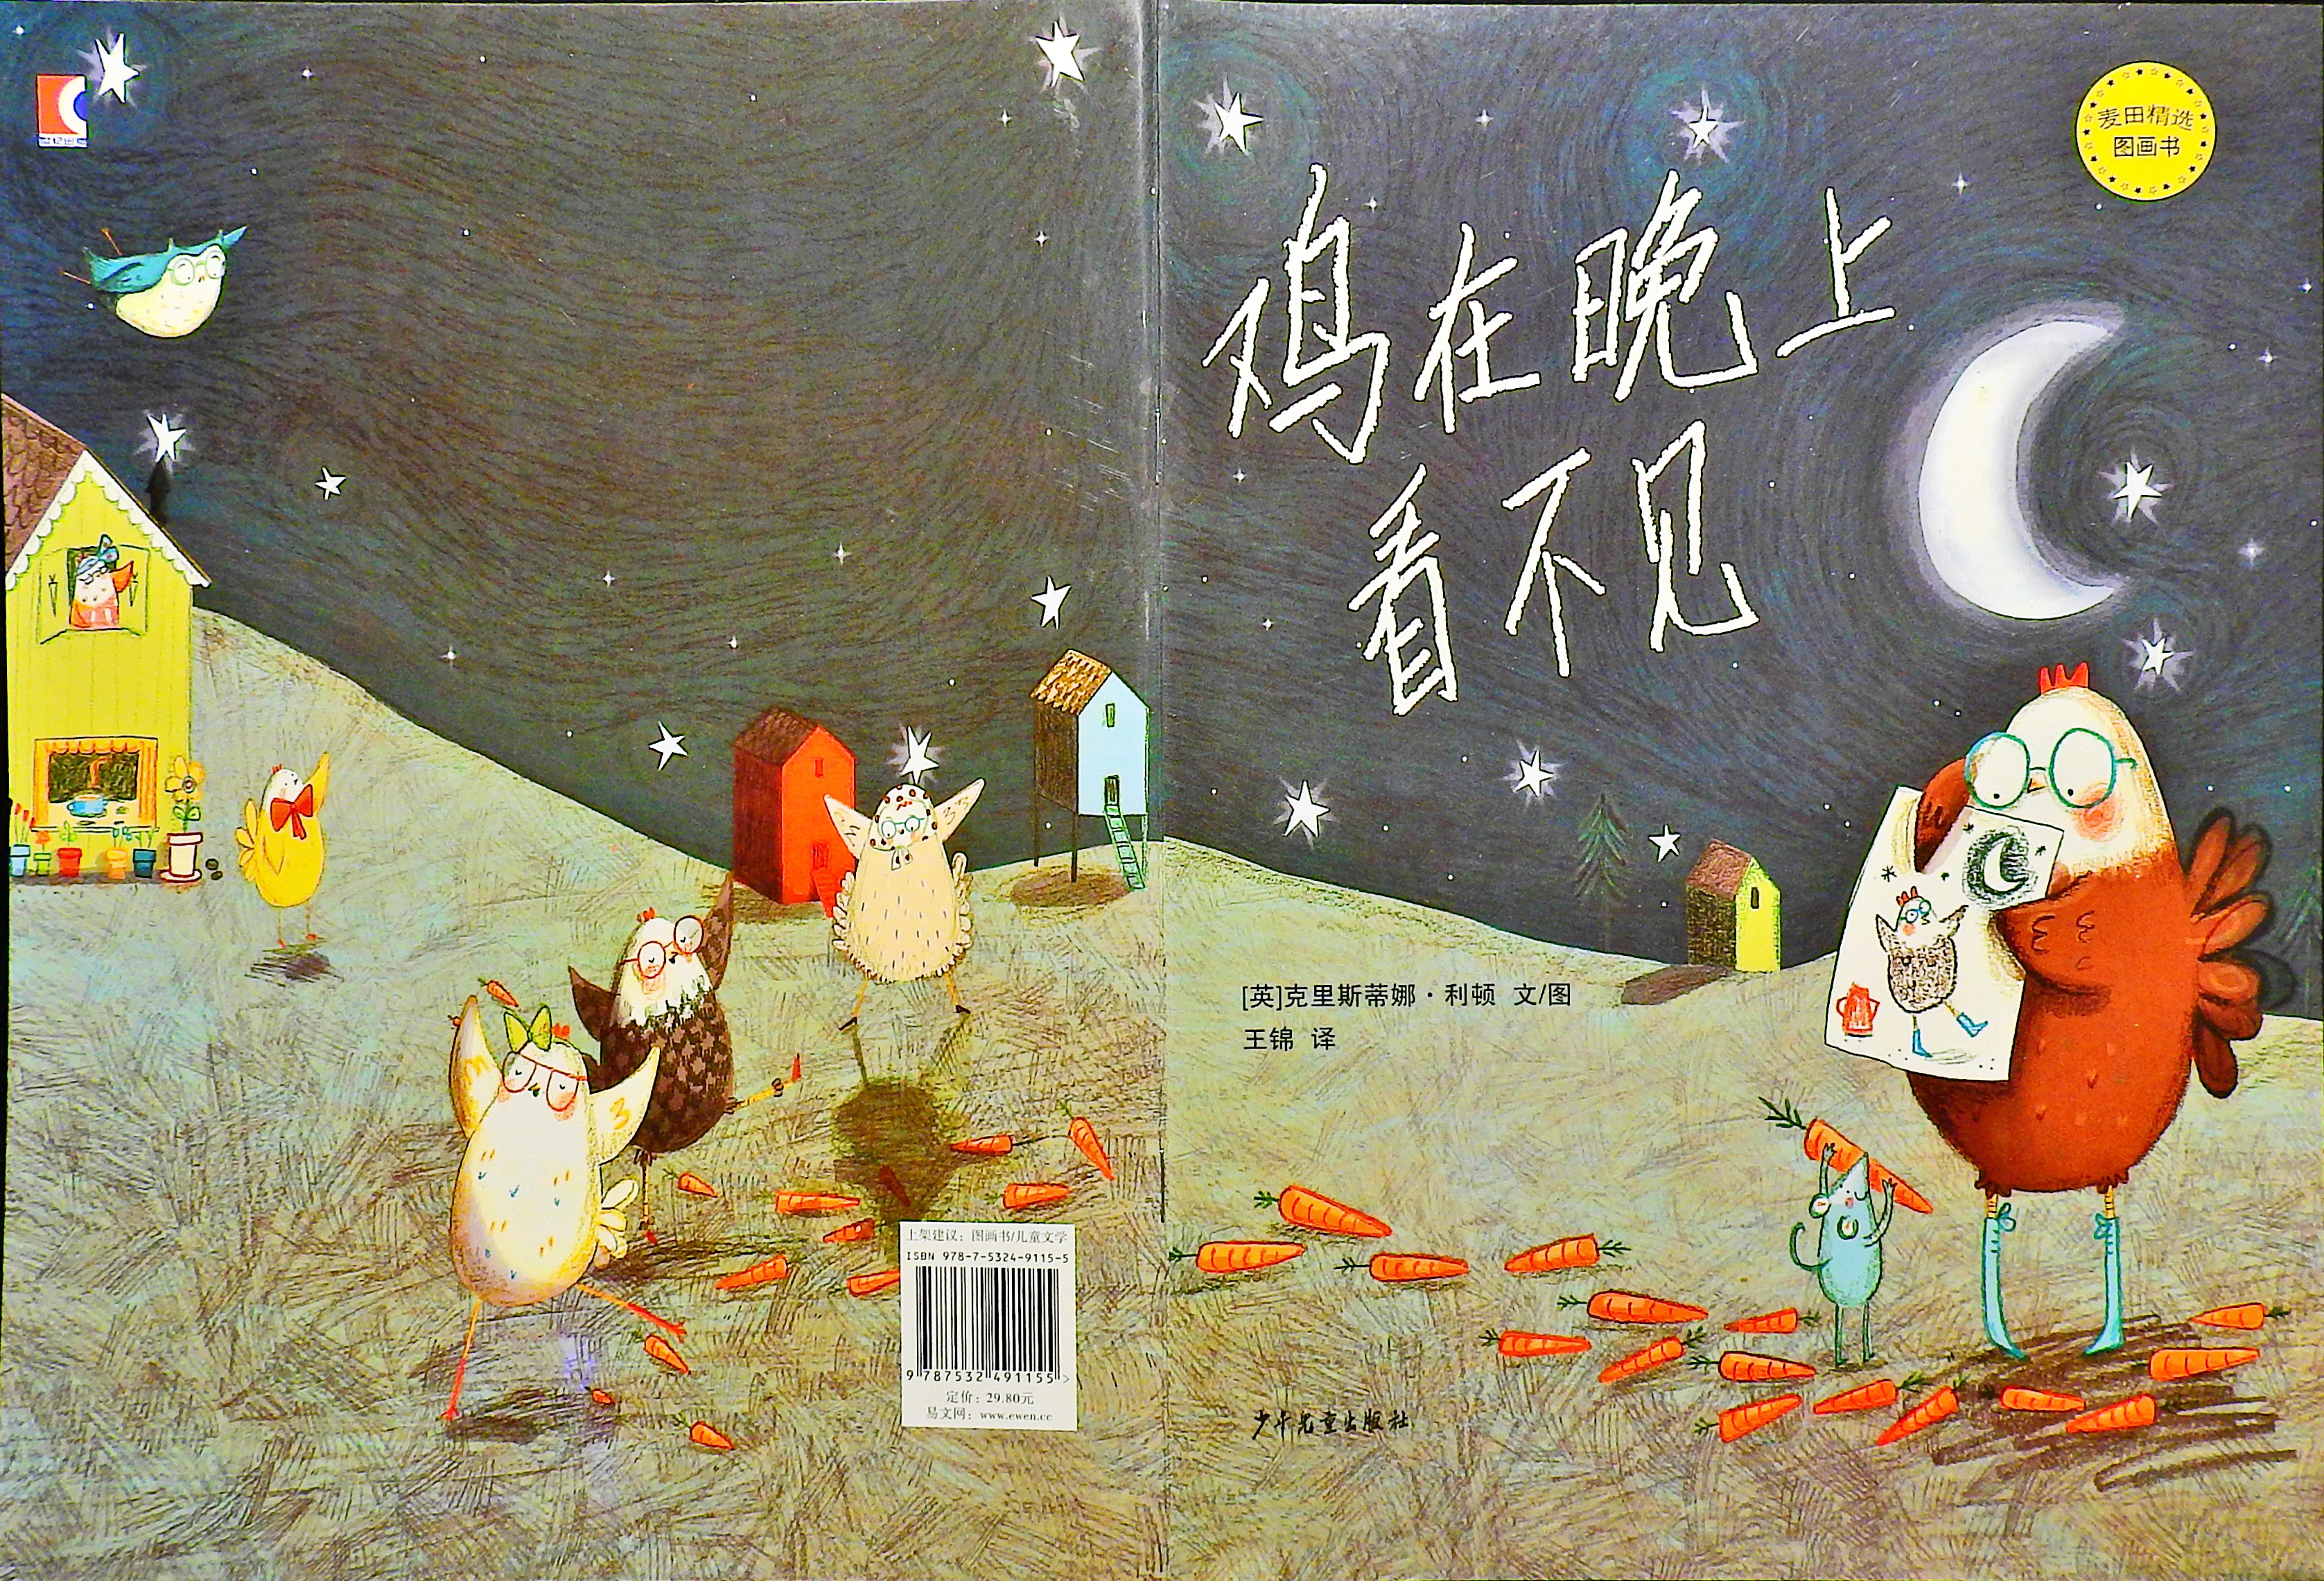 鸡在晚上看不见 (01),绘本,绘本故事,绘本阅读,故事书,童书,图画书,课外阅读